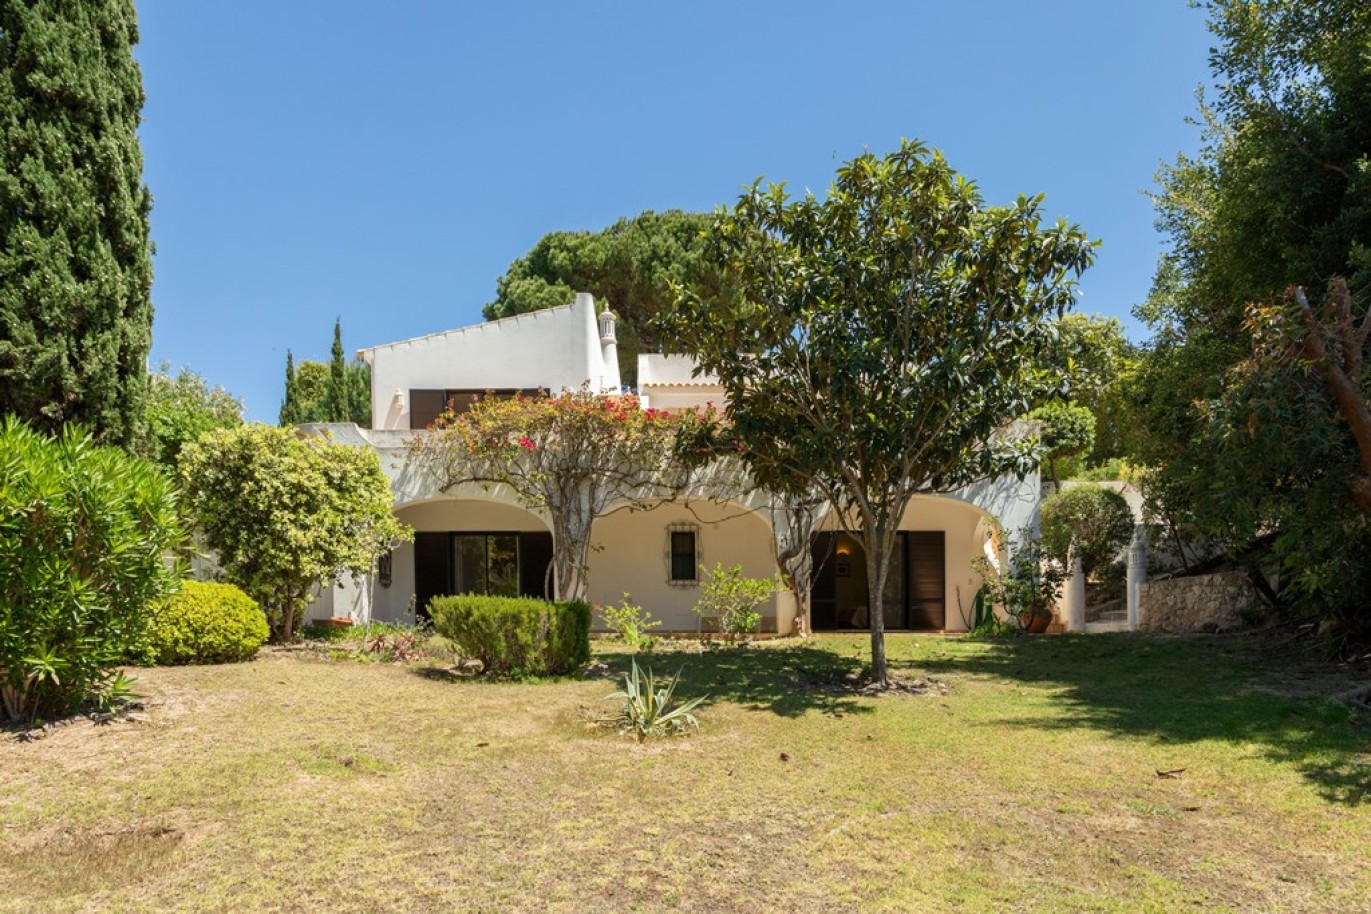 Detached house for sale in Vale do Lobo, Algarve_264569